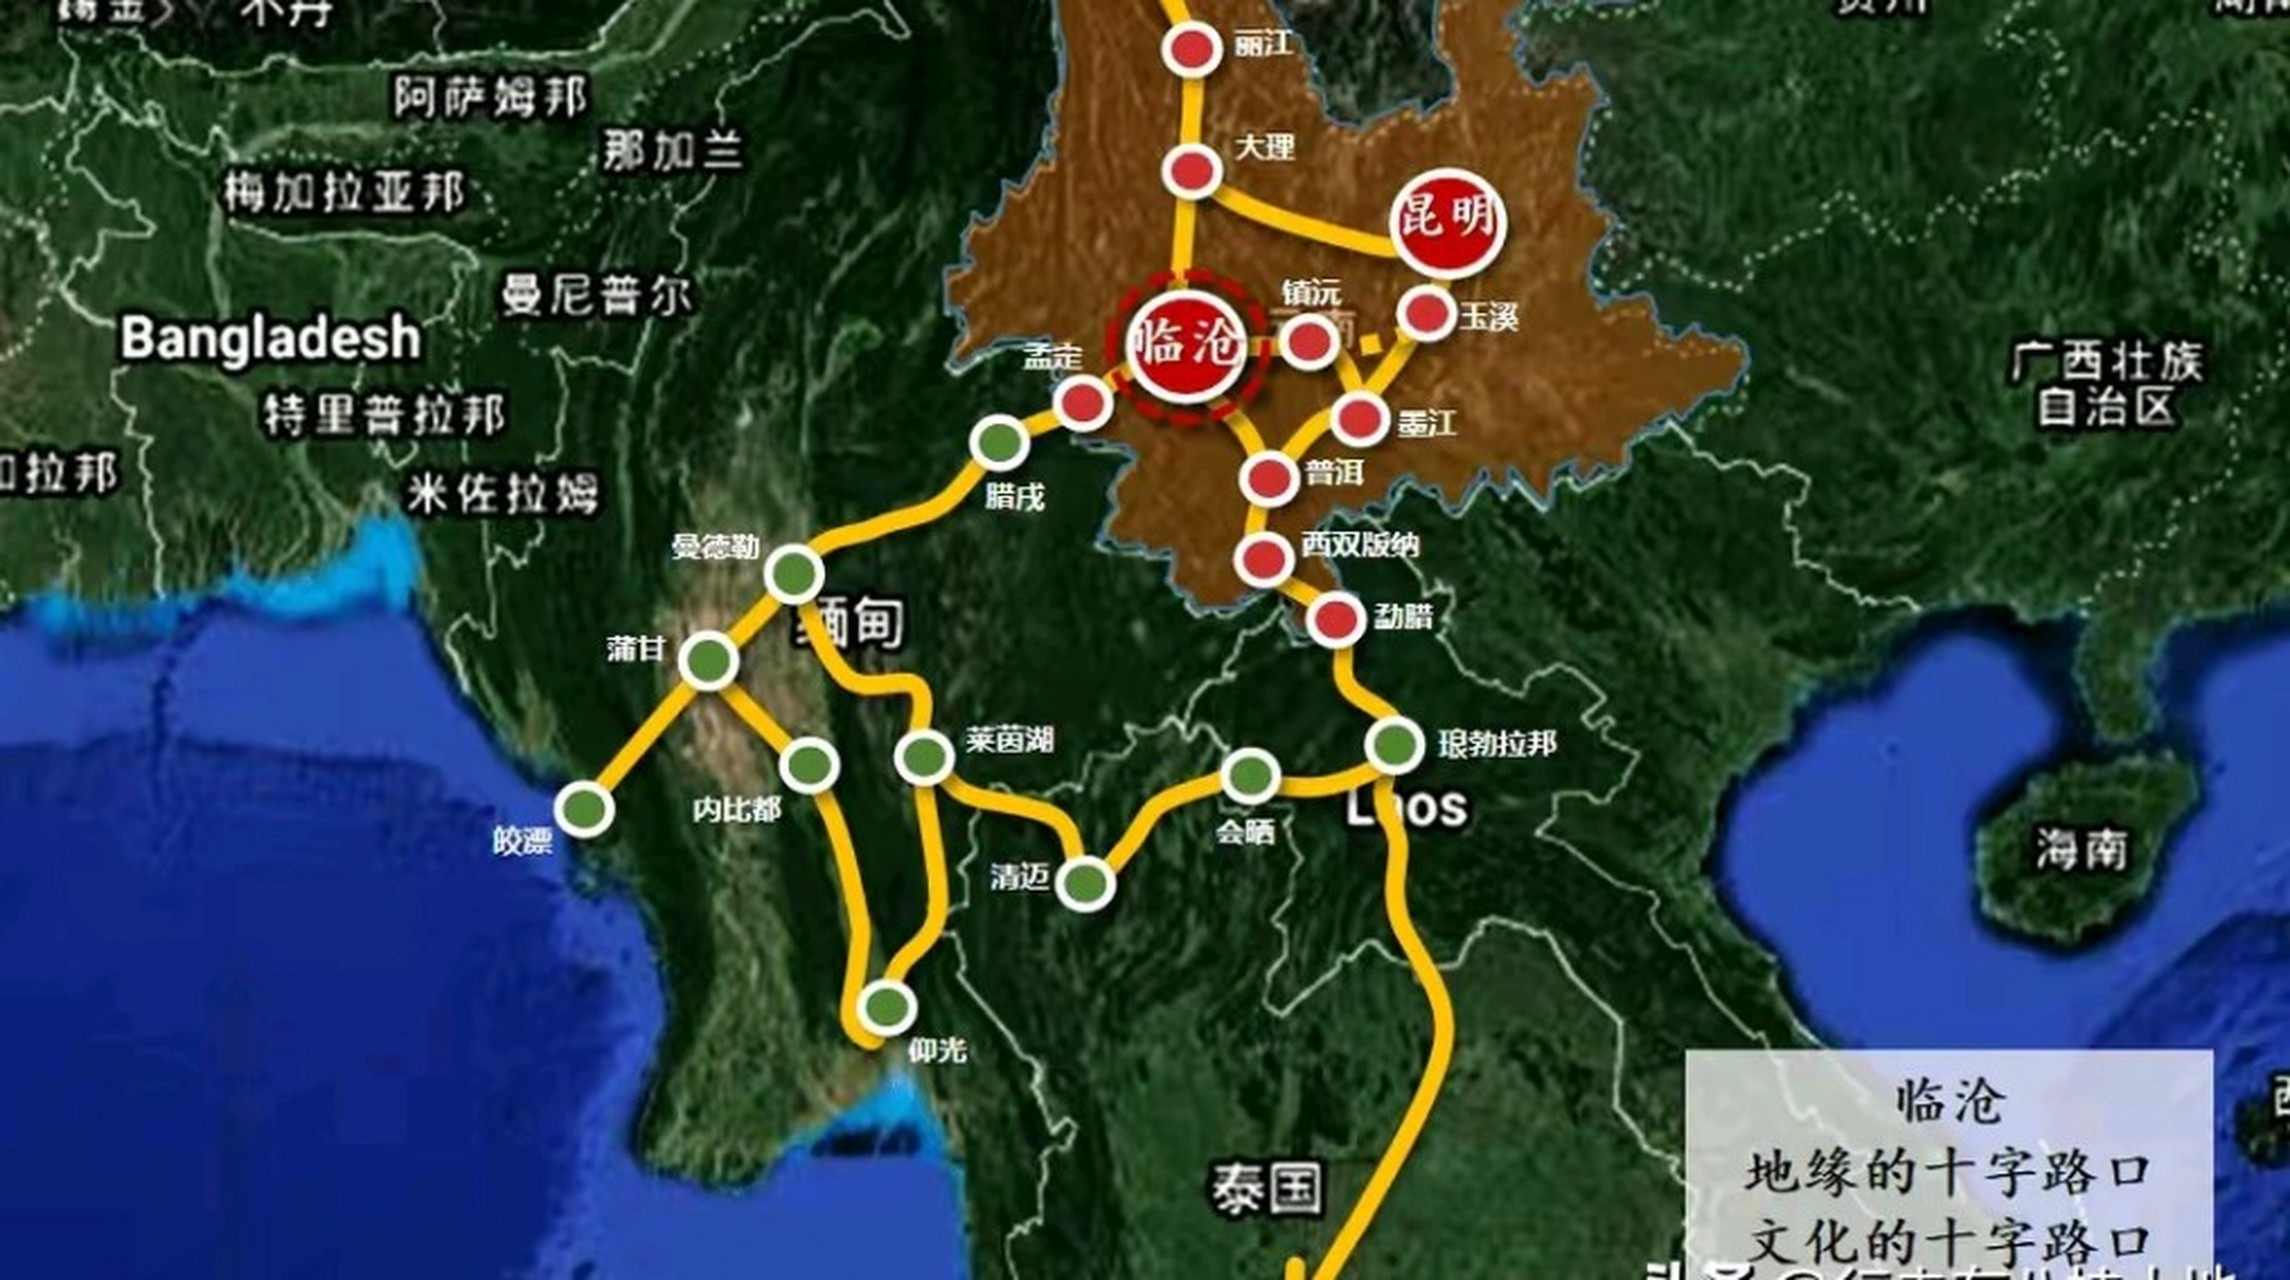 中缅铁路是中国对外铁路网建设最重要的通道